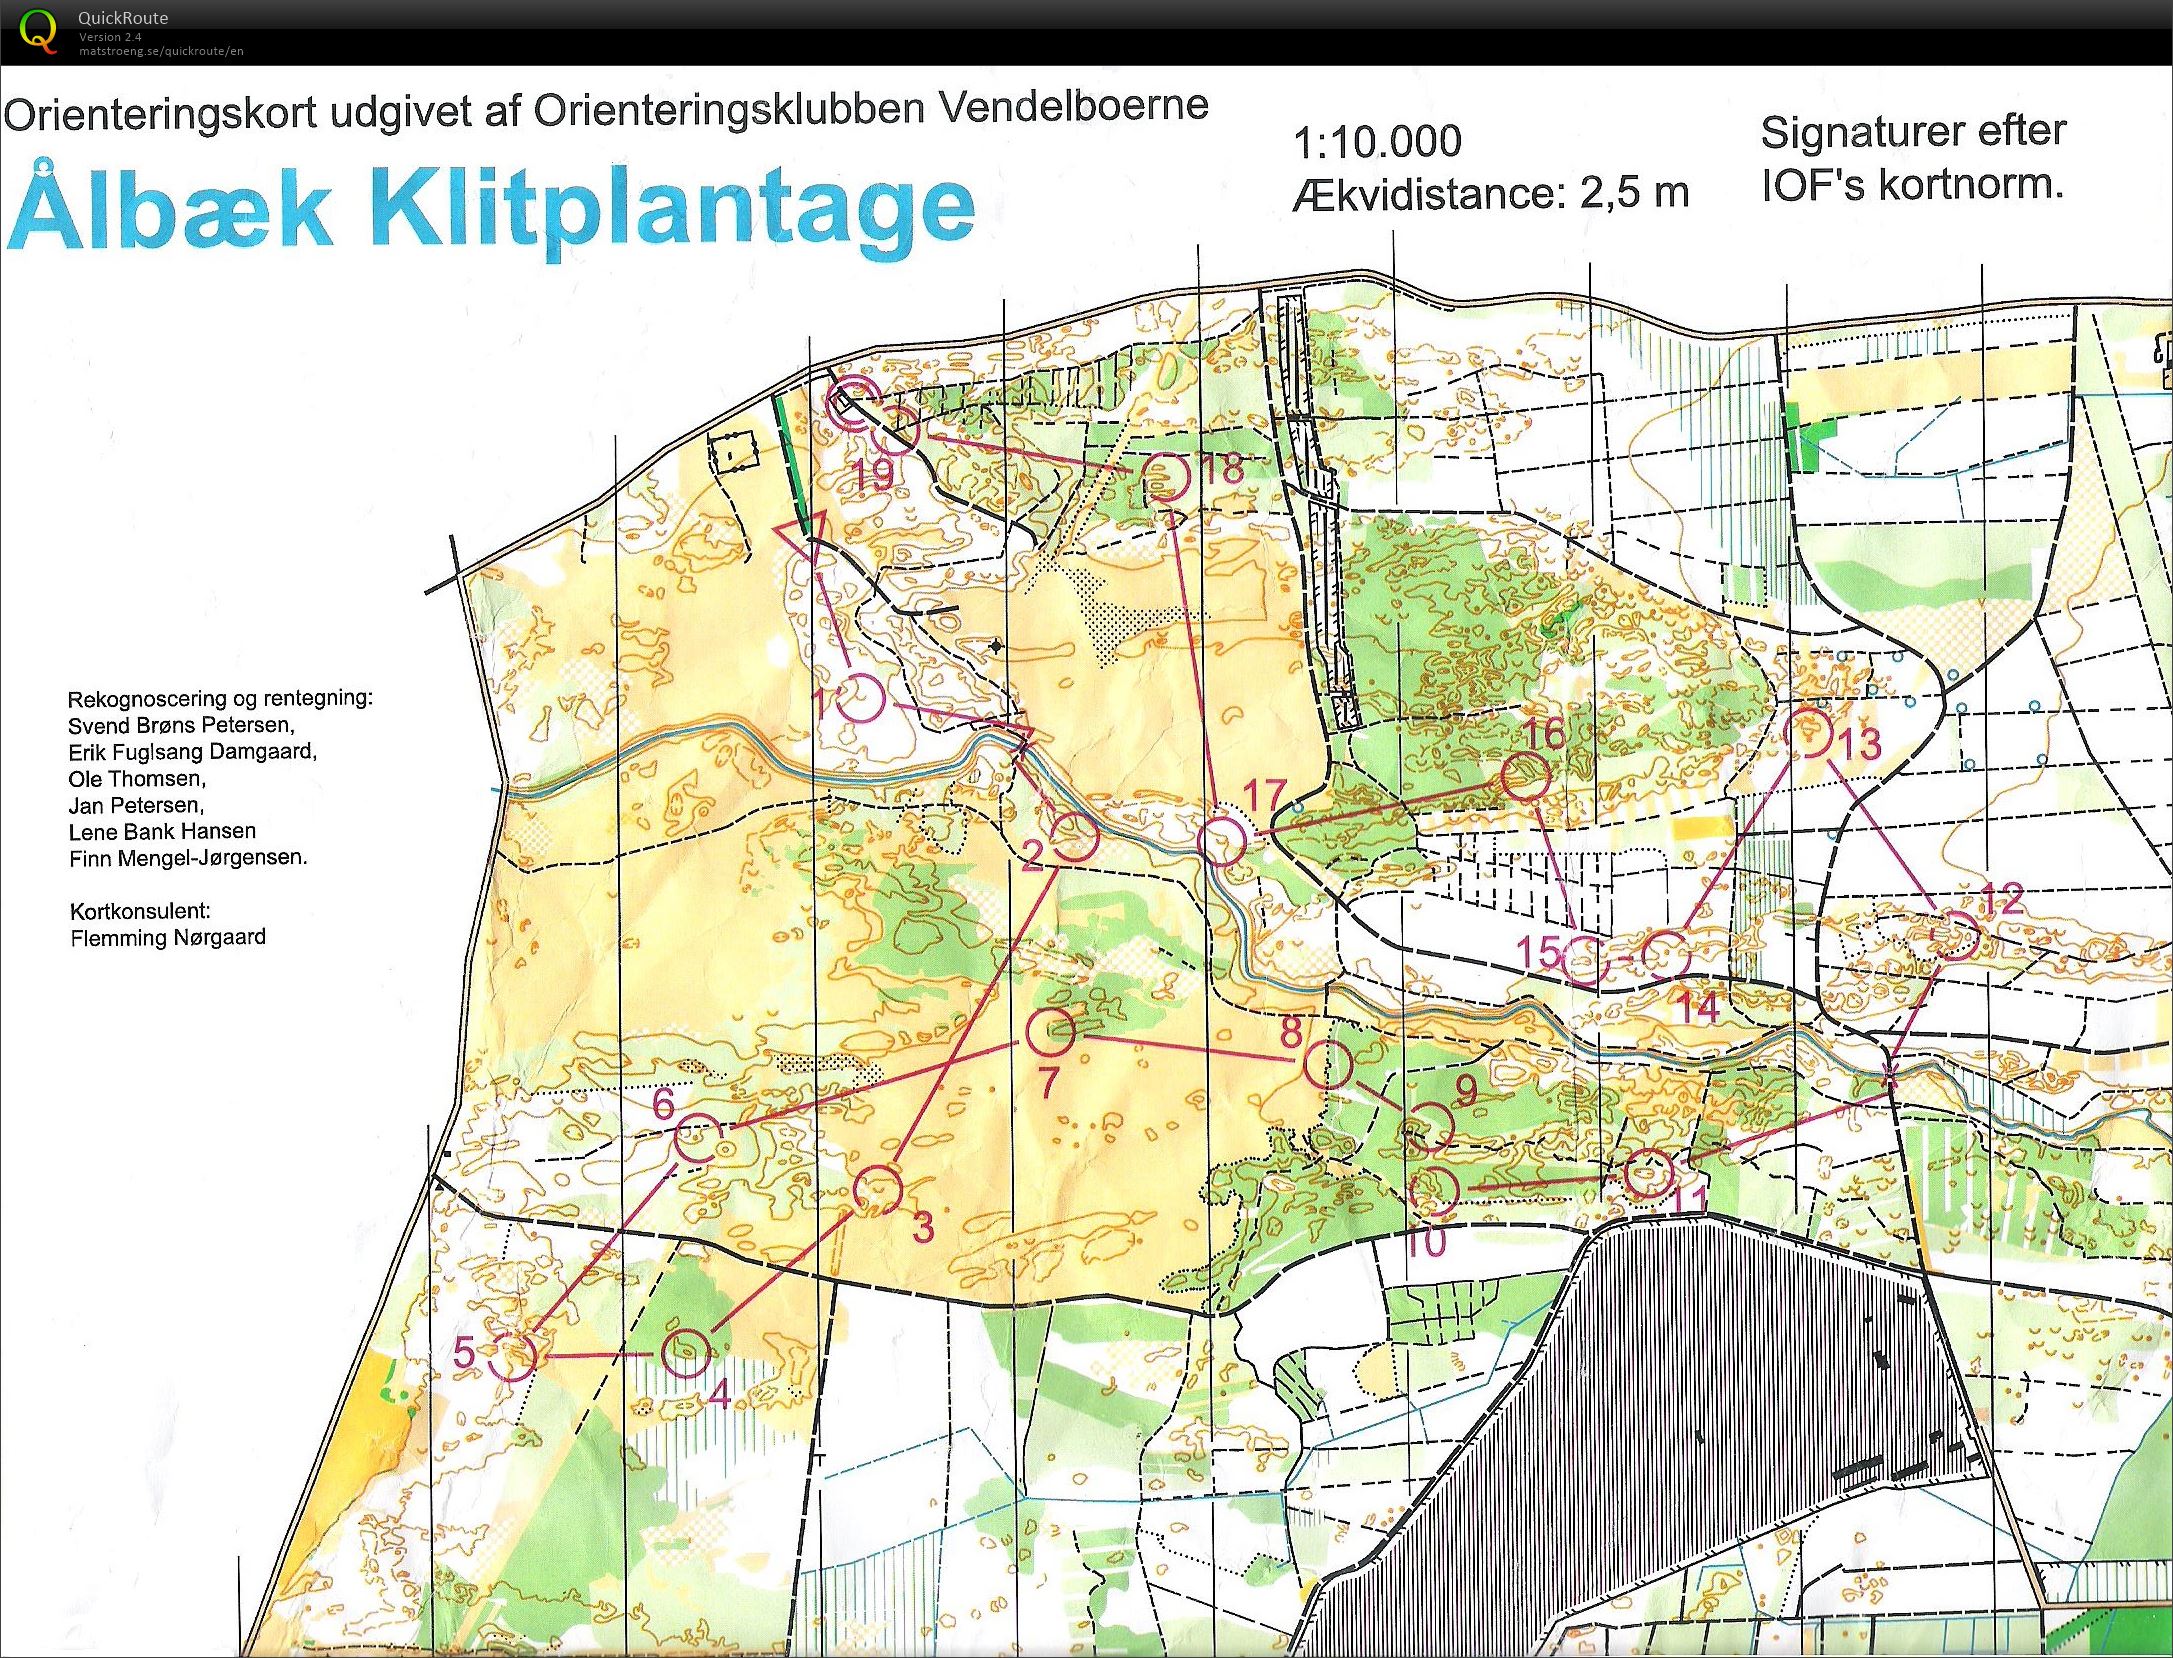 NJM Natløb Ålbæk Klitplantage - H45 - 6.2 km. (2014-09-24)